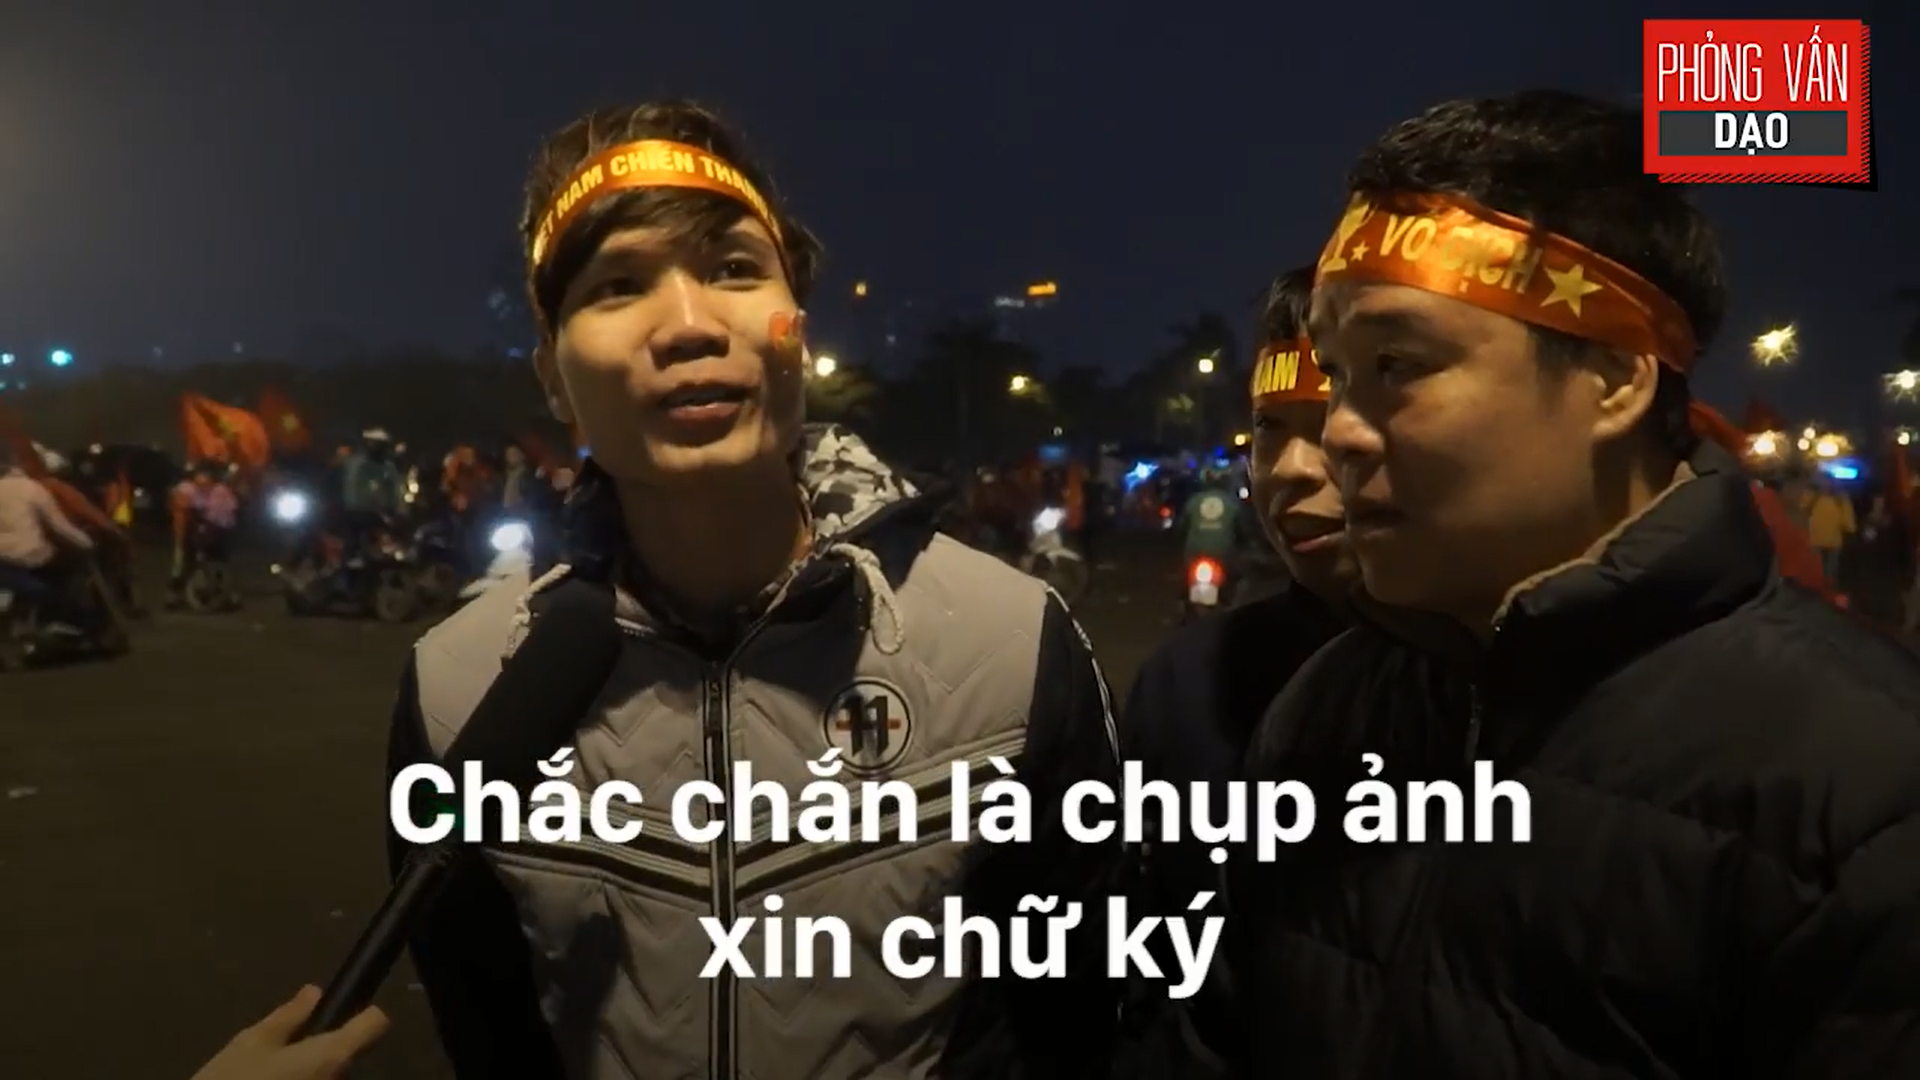 Phỏng vấn dạo: Cảm xúc của người hâm mộ khi đón U23 Việt Nam trở về trong vòng tay - Ảnh 16.